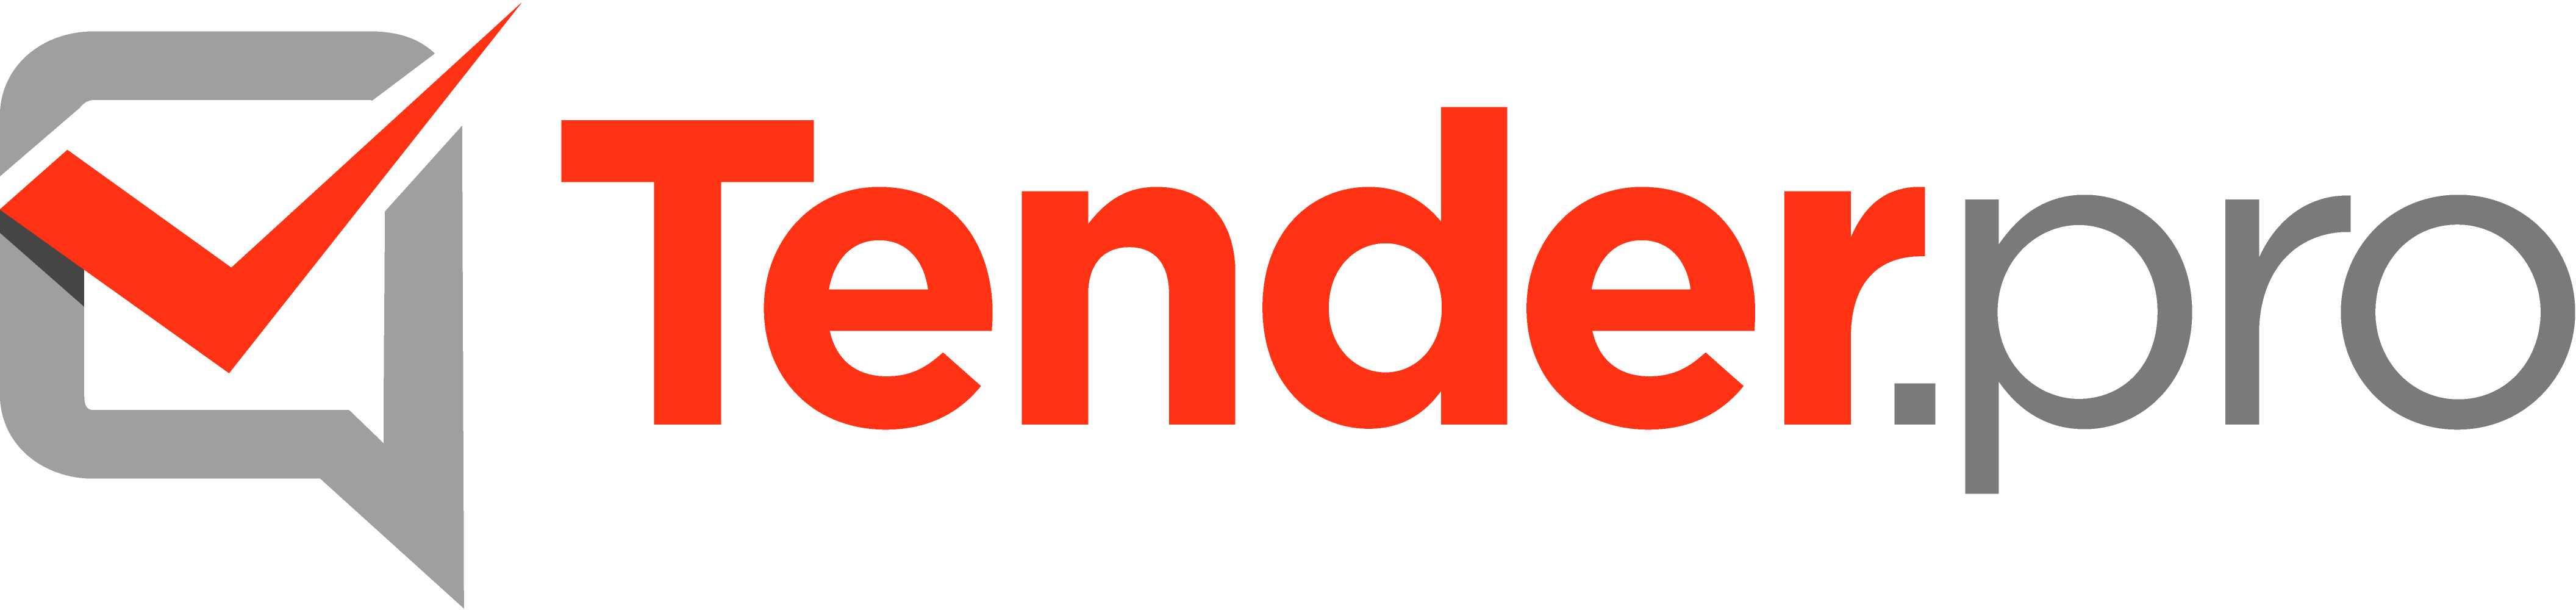 Бика тендер. ТЕНДЕРПРО. Tender Pro торговая площадка. Тендер лого. Тендер логотип изображение.